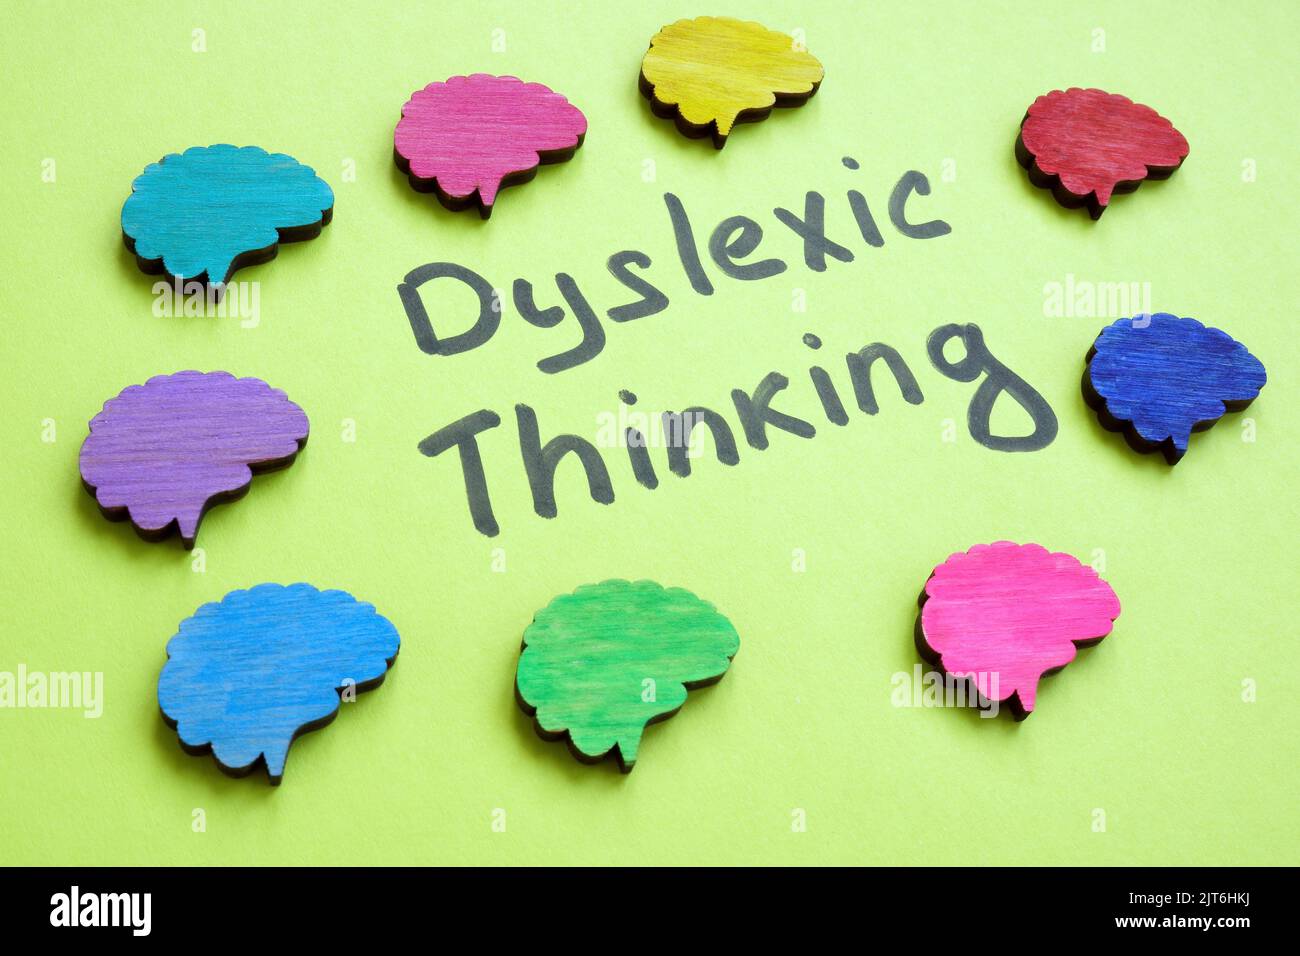 Dylexisches Denken ist ein Zeichen und bunte Gehirne um sich herum. Stockfoto